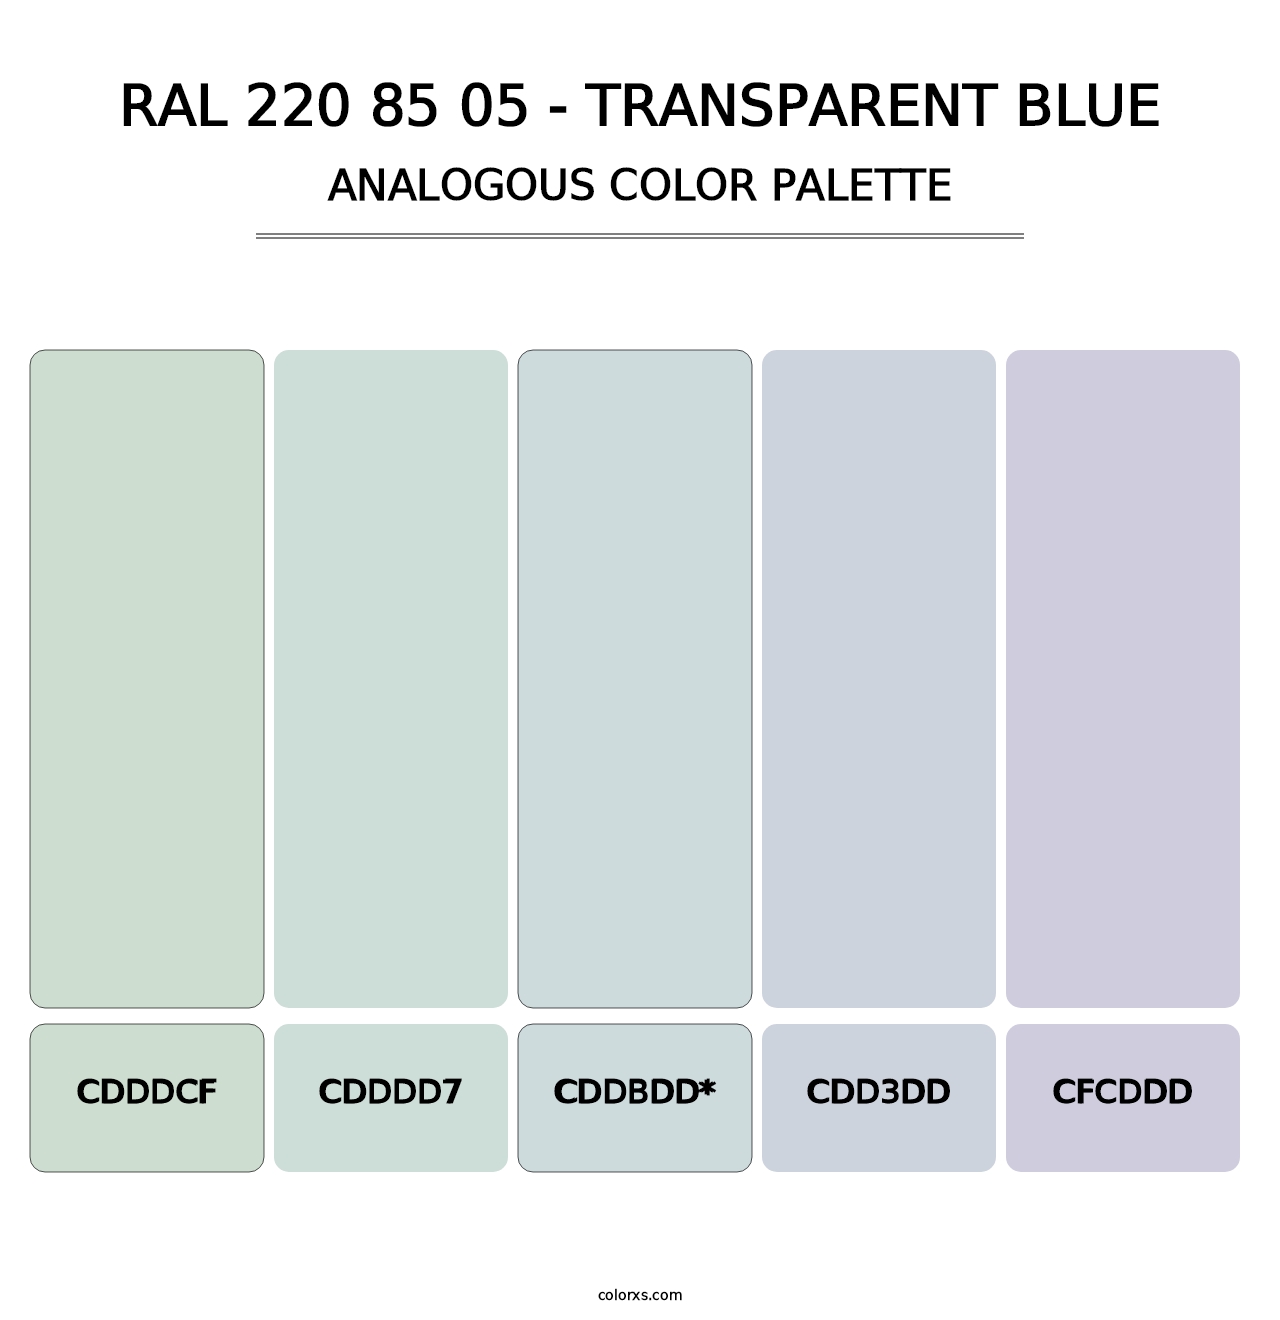 RAL 220 85 05 - Transparent Blue - Analogous Color Palette